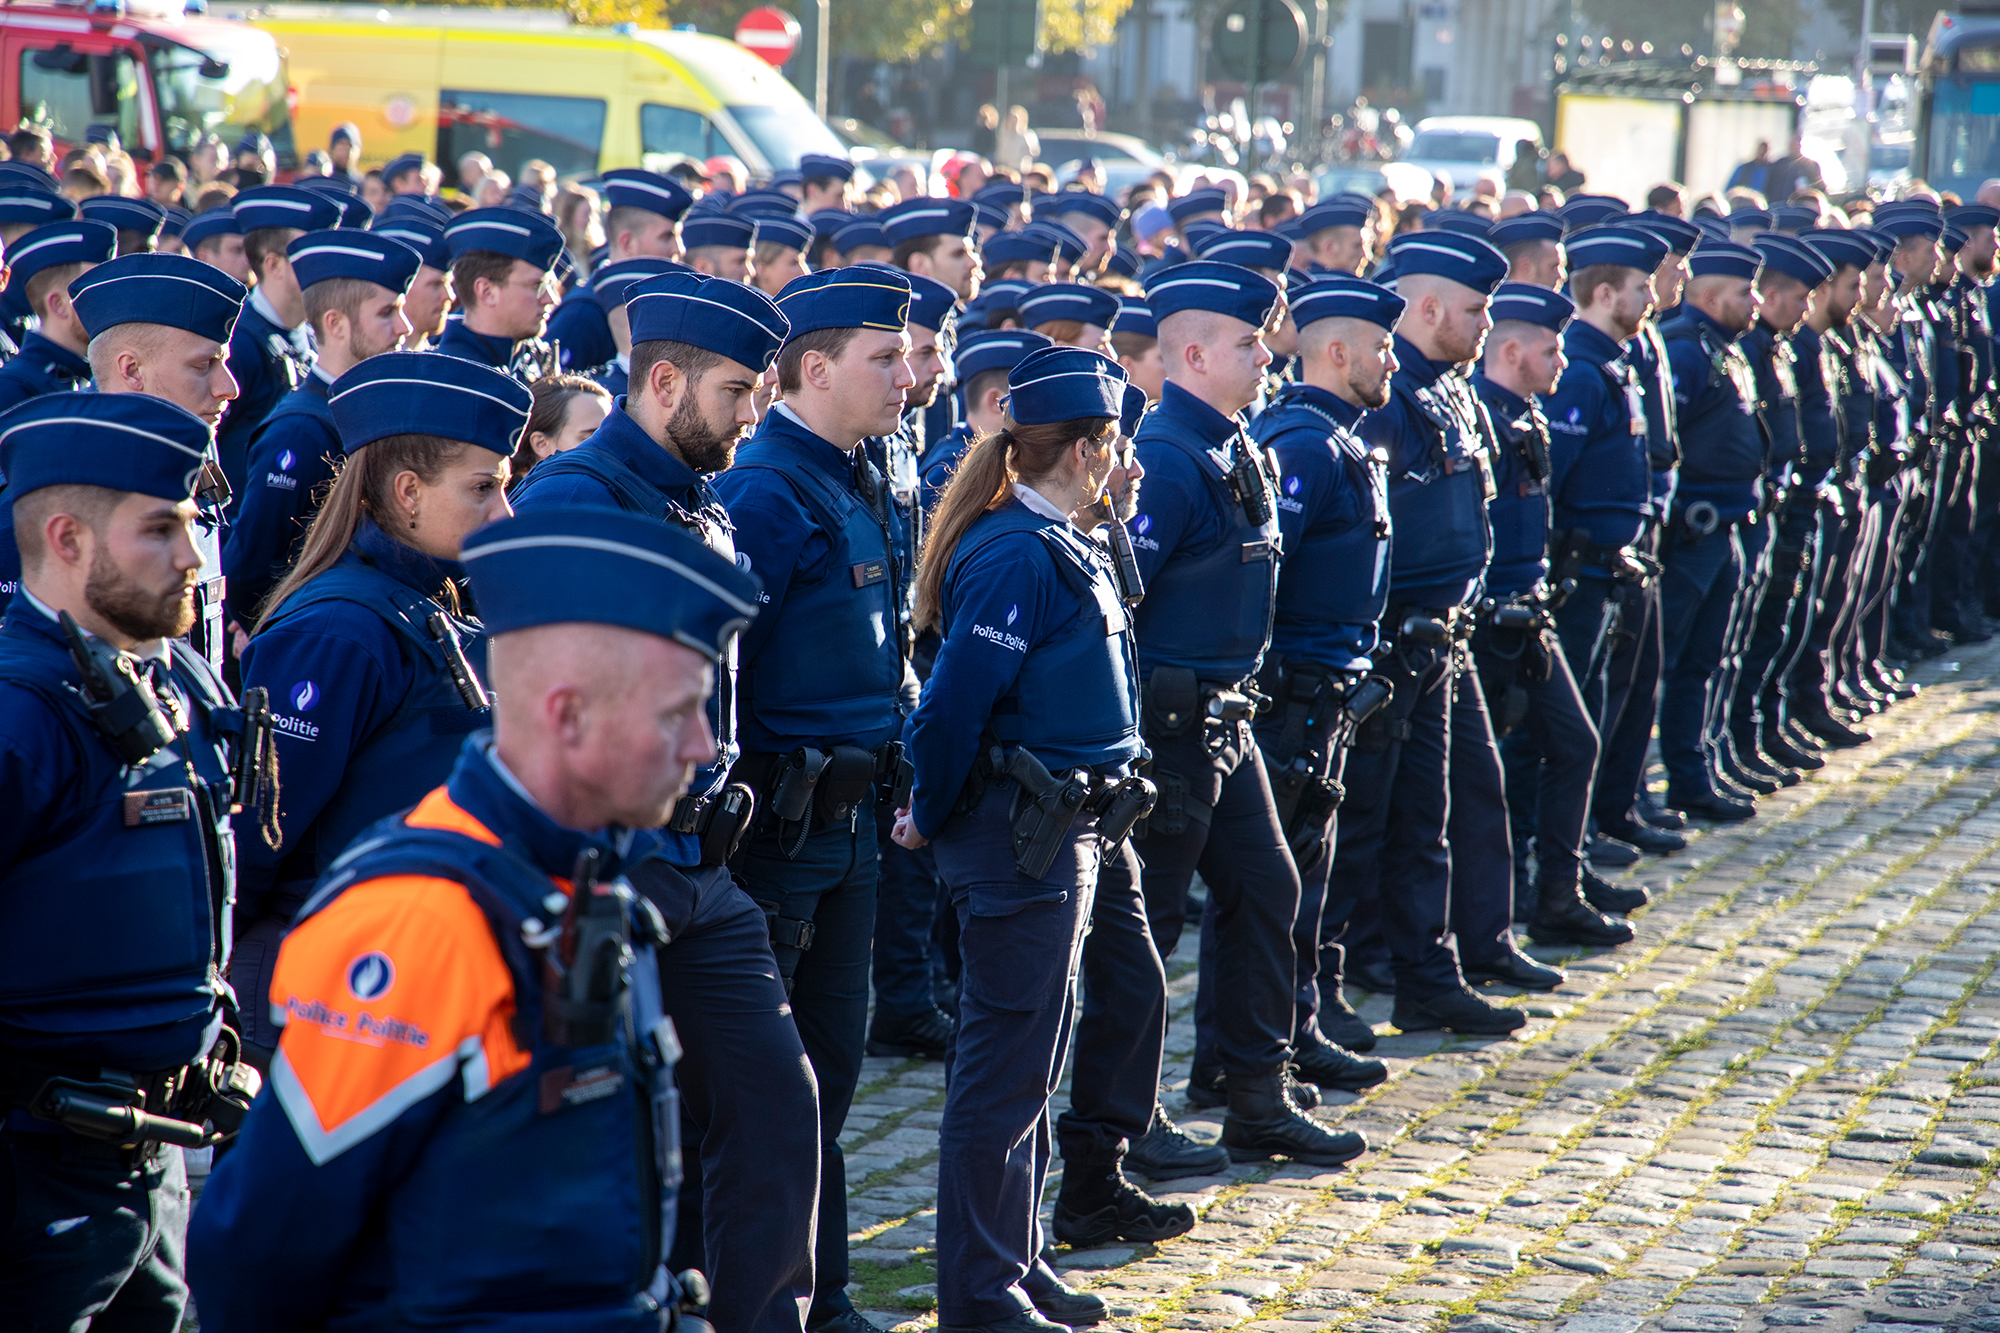 Schweigeminute für getöteten Polizisten vor Brüsseler Justizpalast (Bild: Nicolas Maeterlinck/Belga)